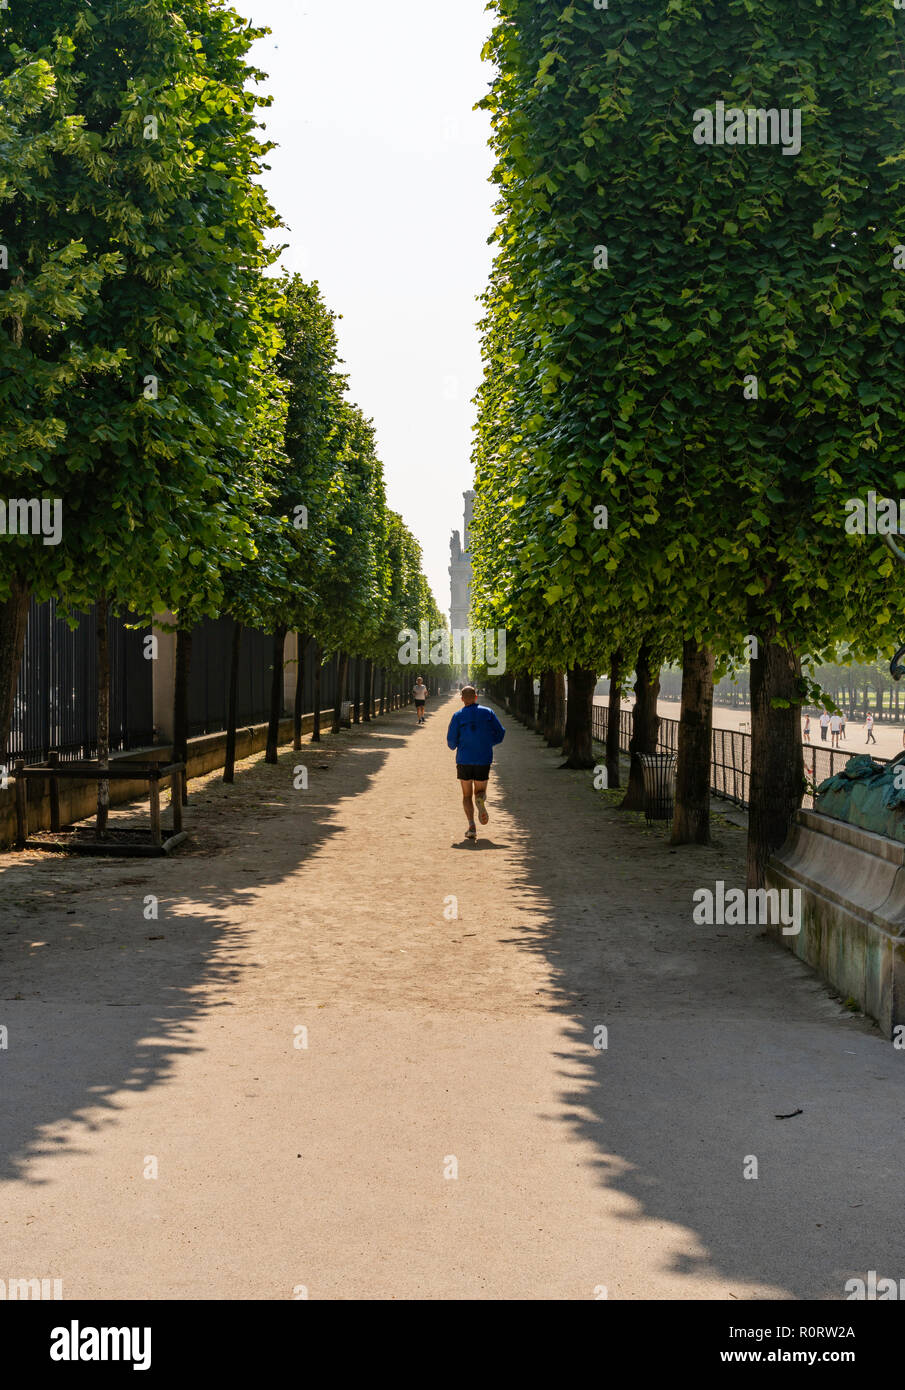 Les joggeurs courant le long d'une avenue ombragée d'arbres dans les jardins des Tuileries, Paris, France Banque D'Images